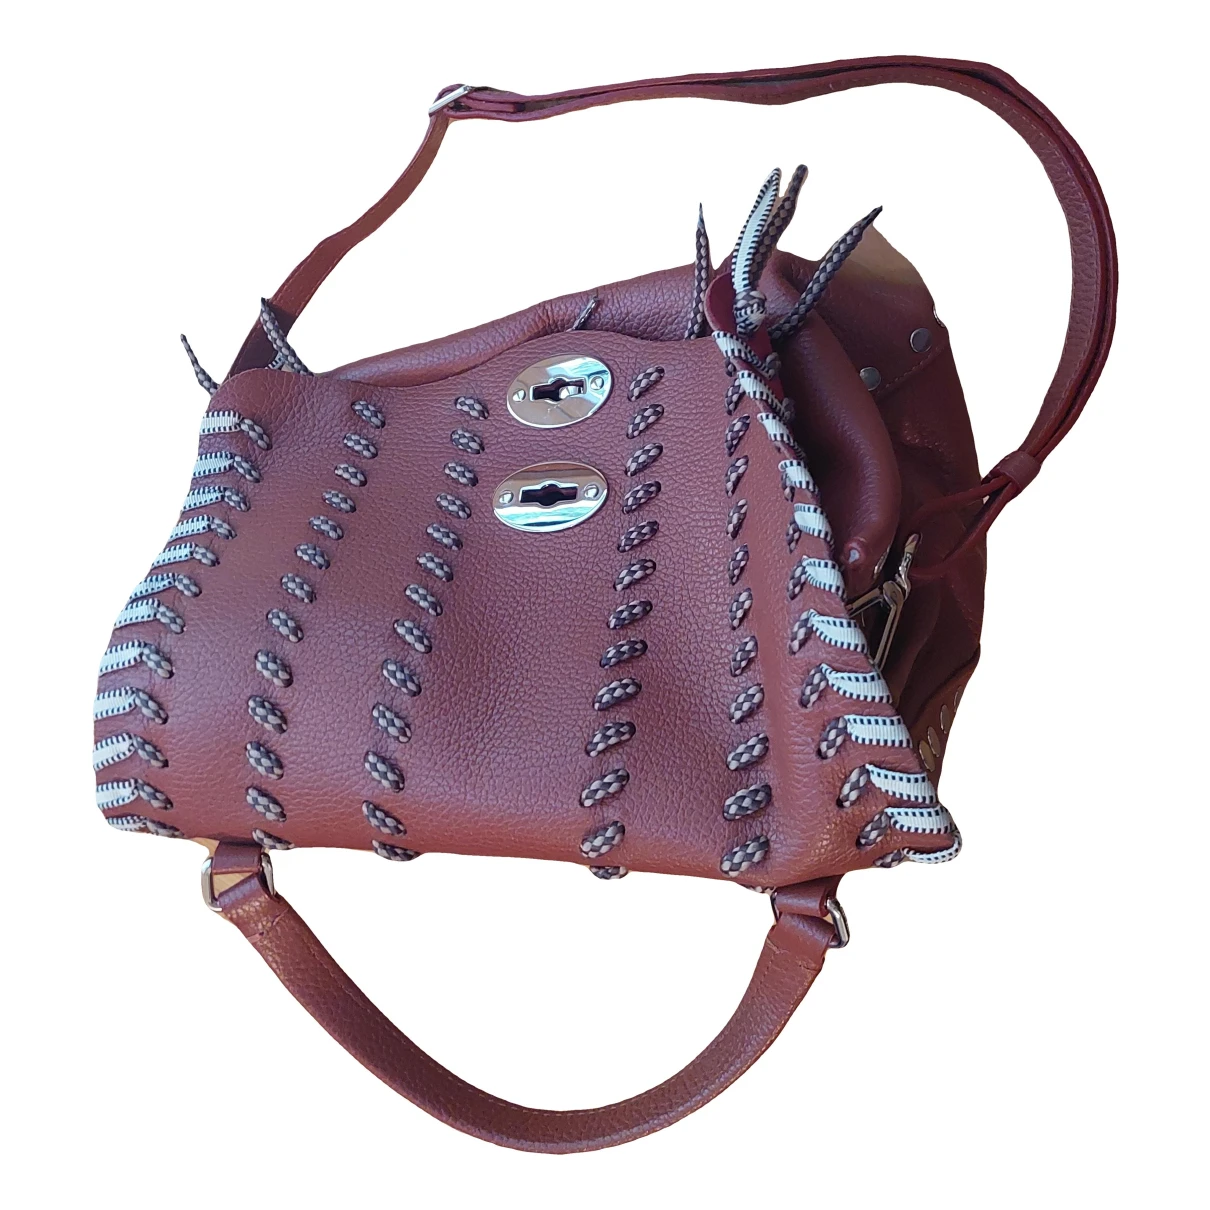 Pre-owned Zanellato Leather Handbag In Red